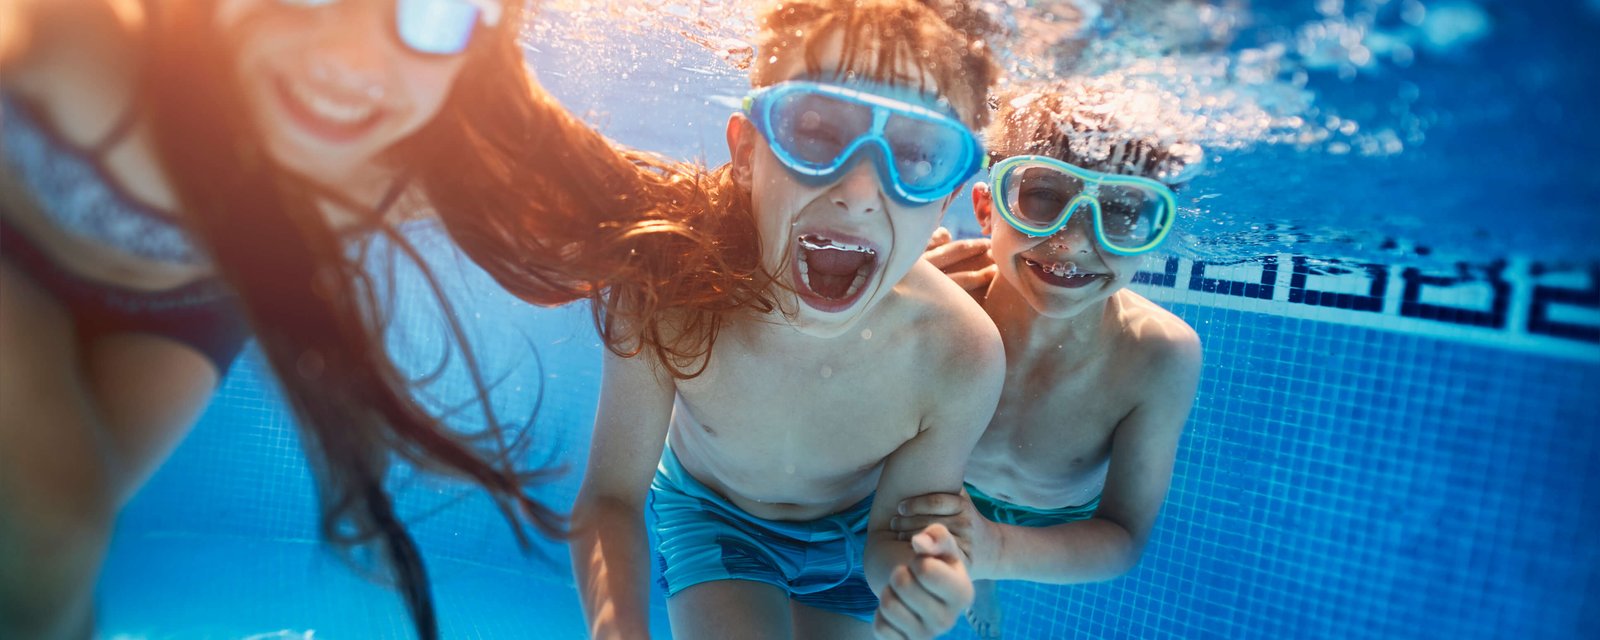 Kinder im Schwimmbad beim tauchen mit Taucherbrille haben Spaß.